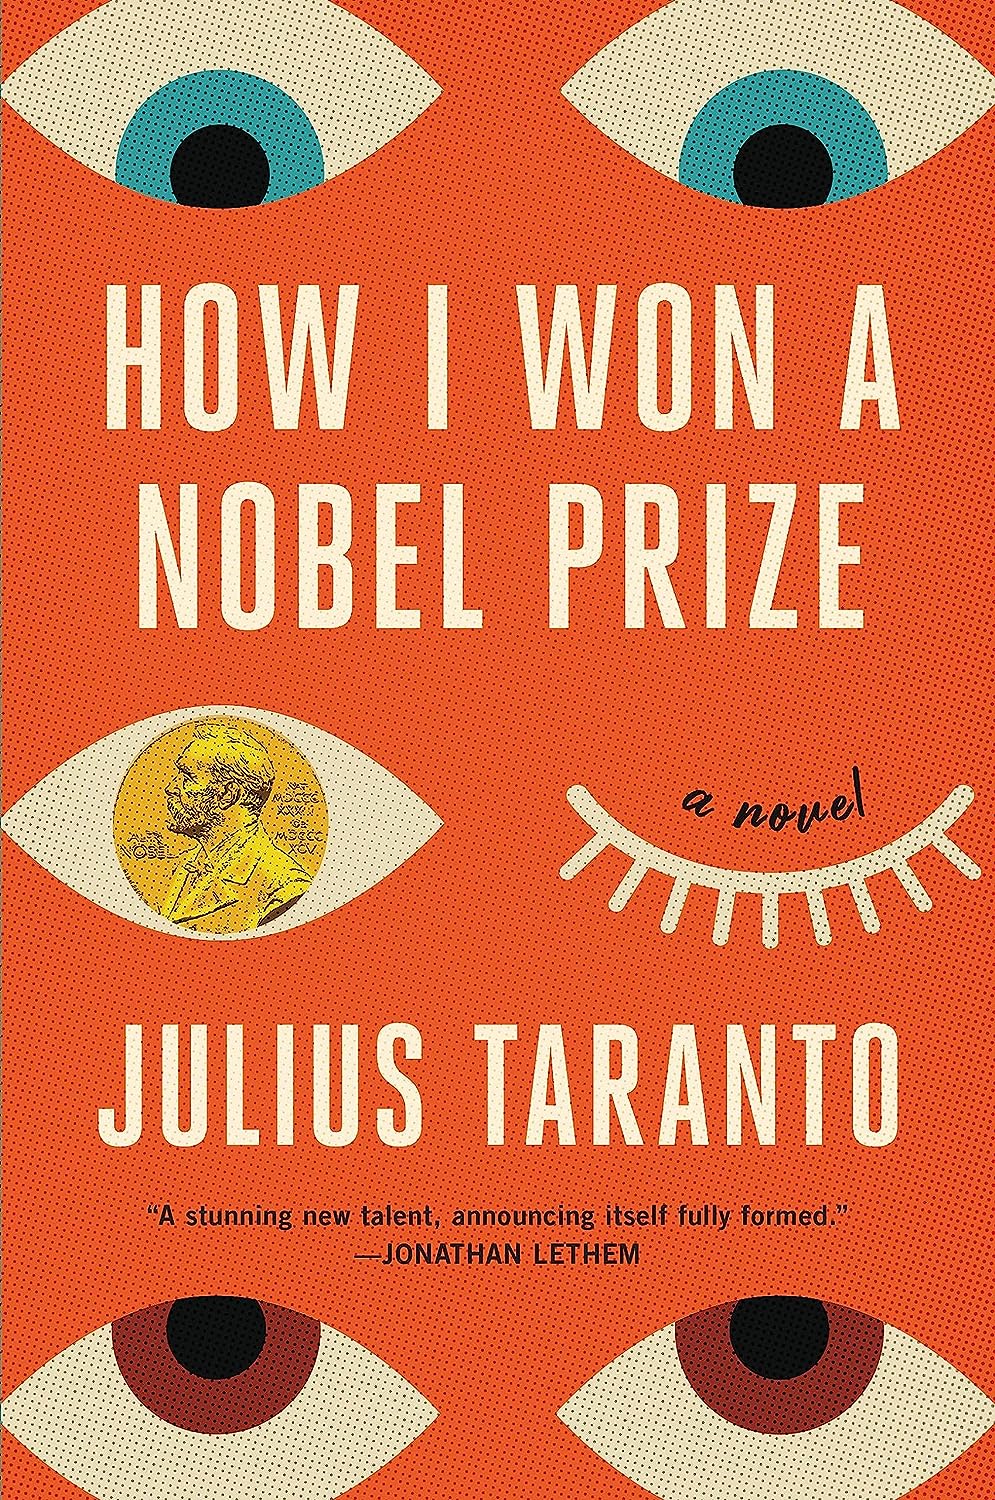 Image for "How I Won a Nobel Prize"